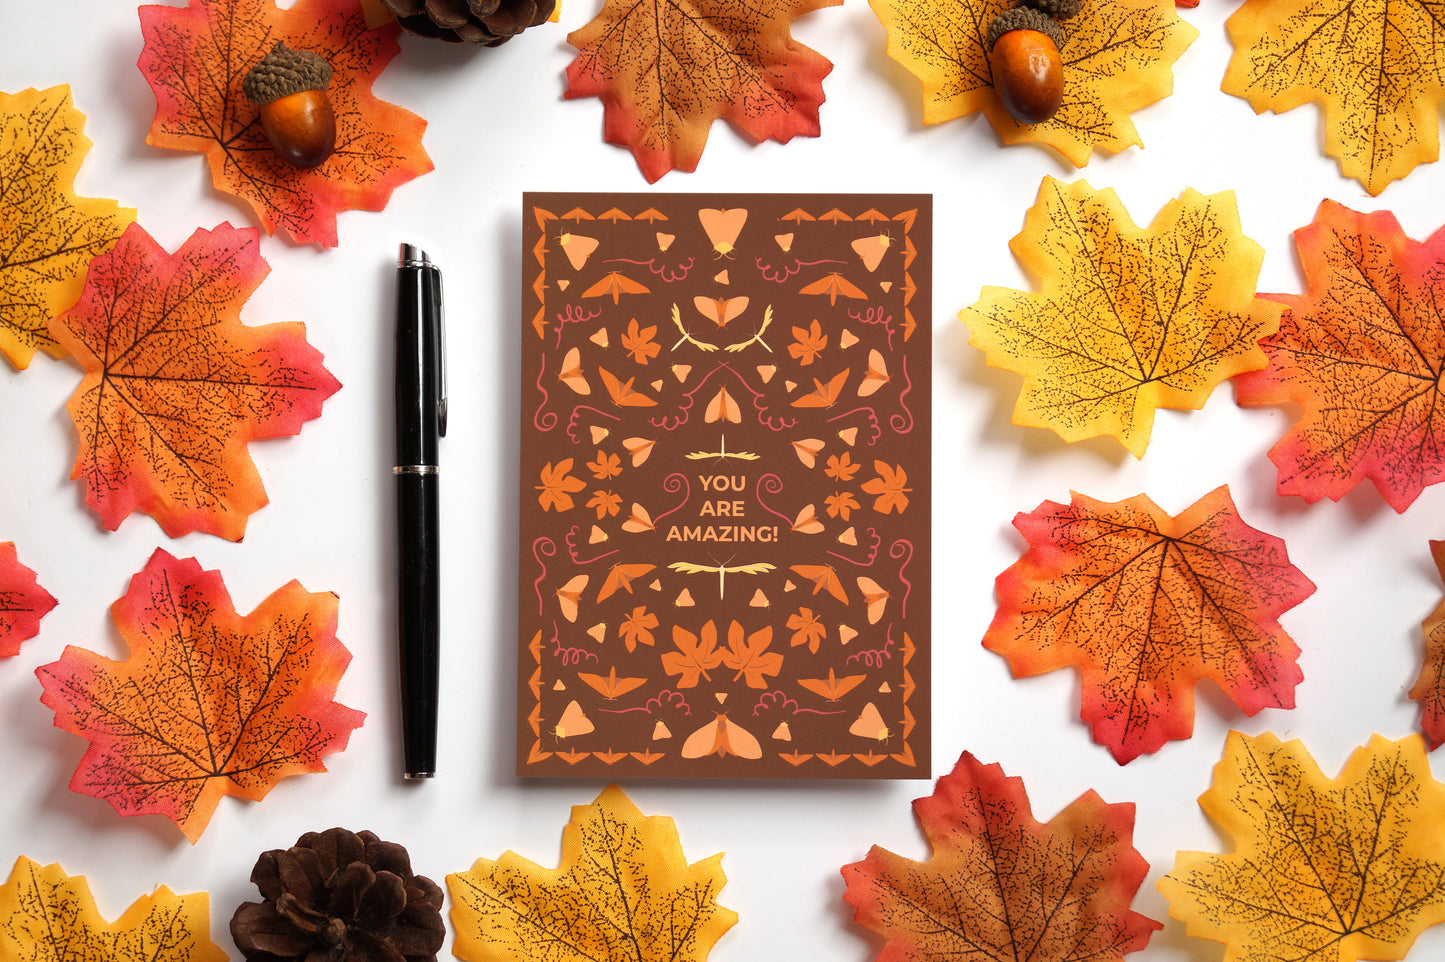 Herbstliche Postkarte mit Nachtfaltern und Herbstlaub 'You are amazing!'